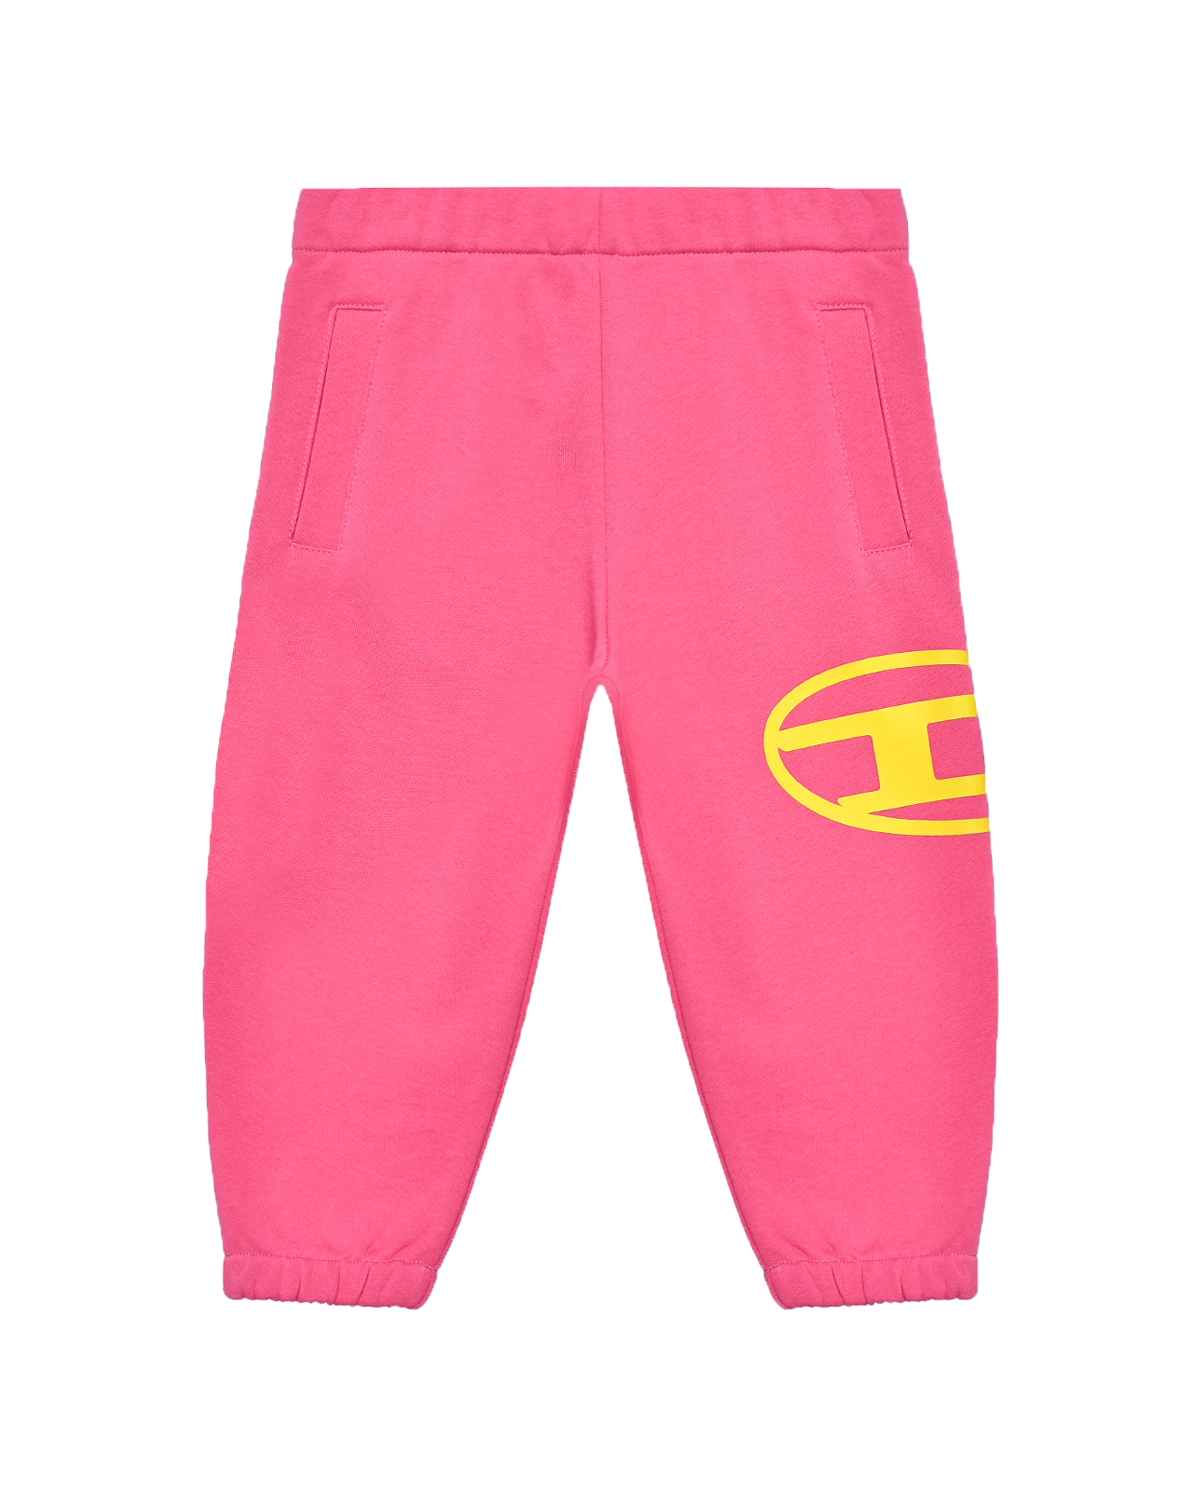 Спортивные брюки с поясом на резинке, розовые Diesel спортивные брюки с поясом на кулиске салатовые diesel